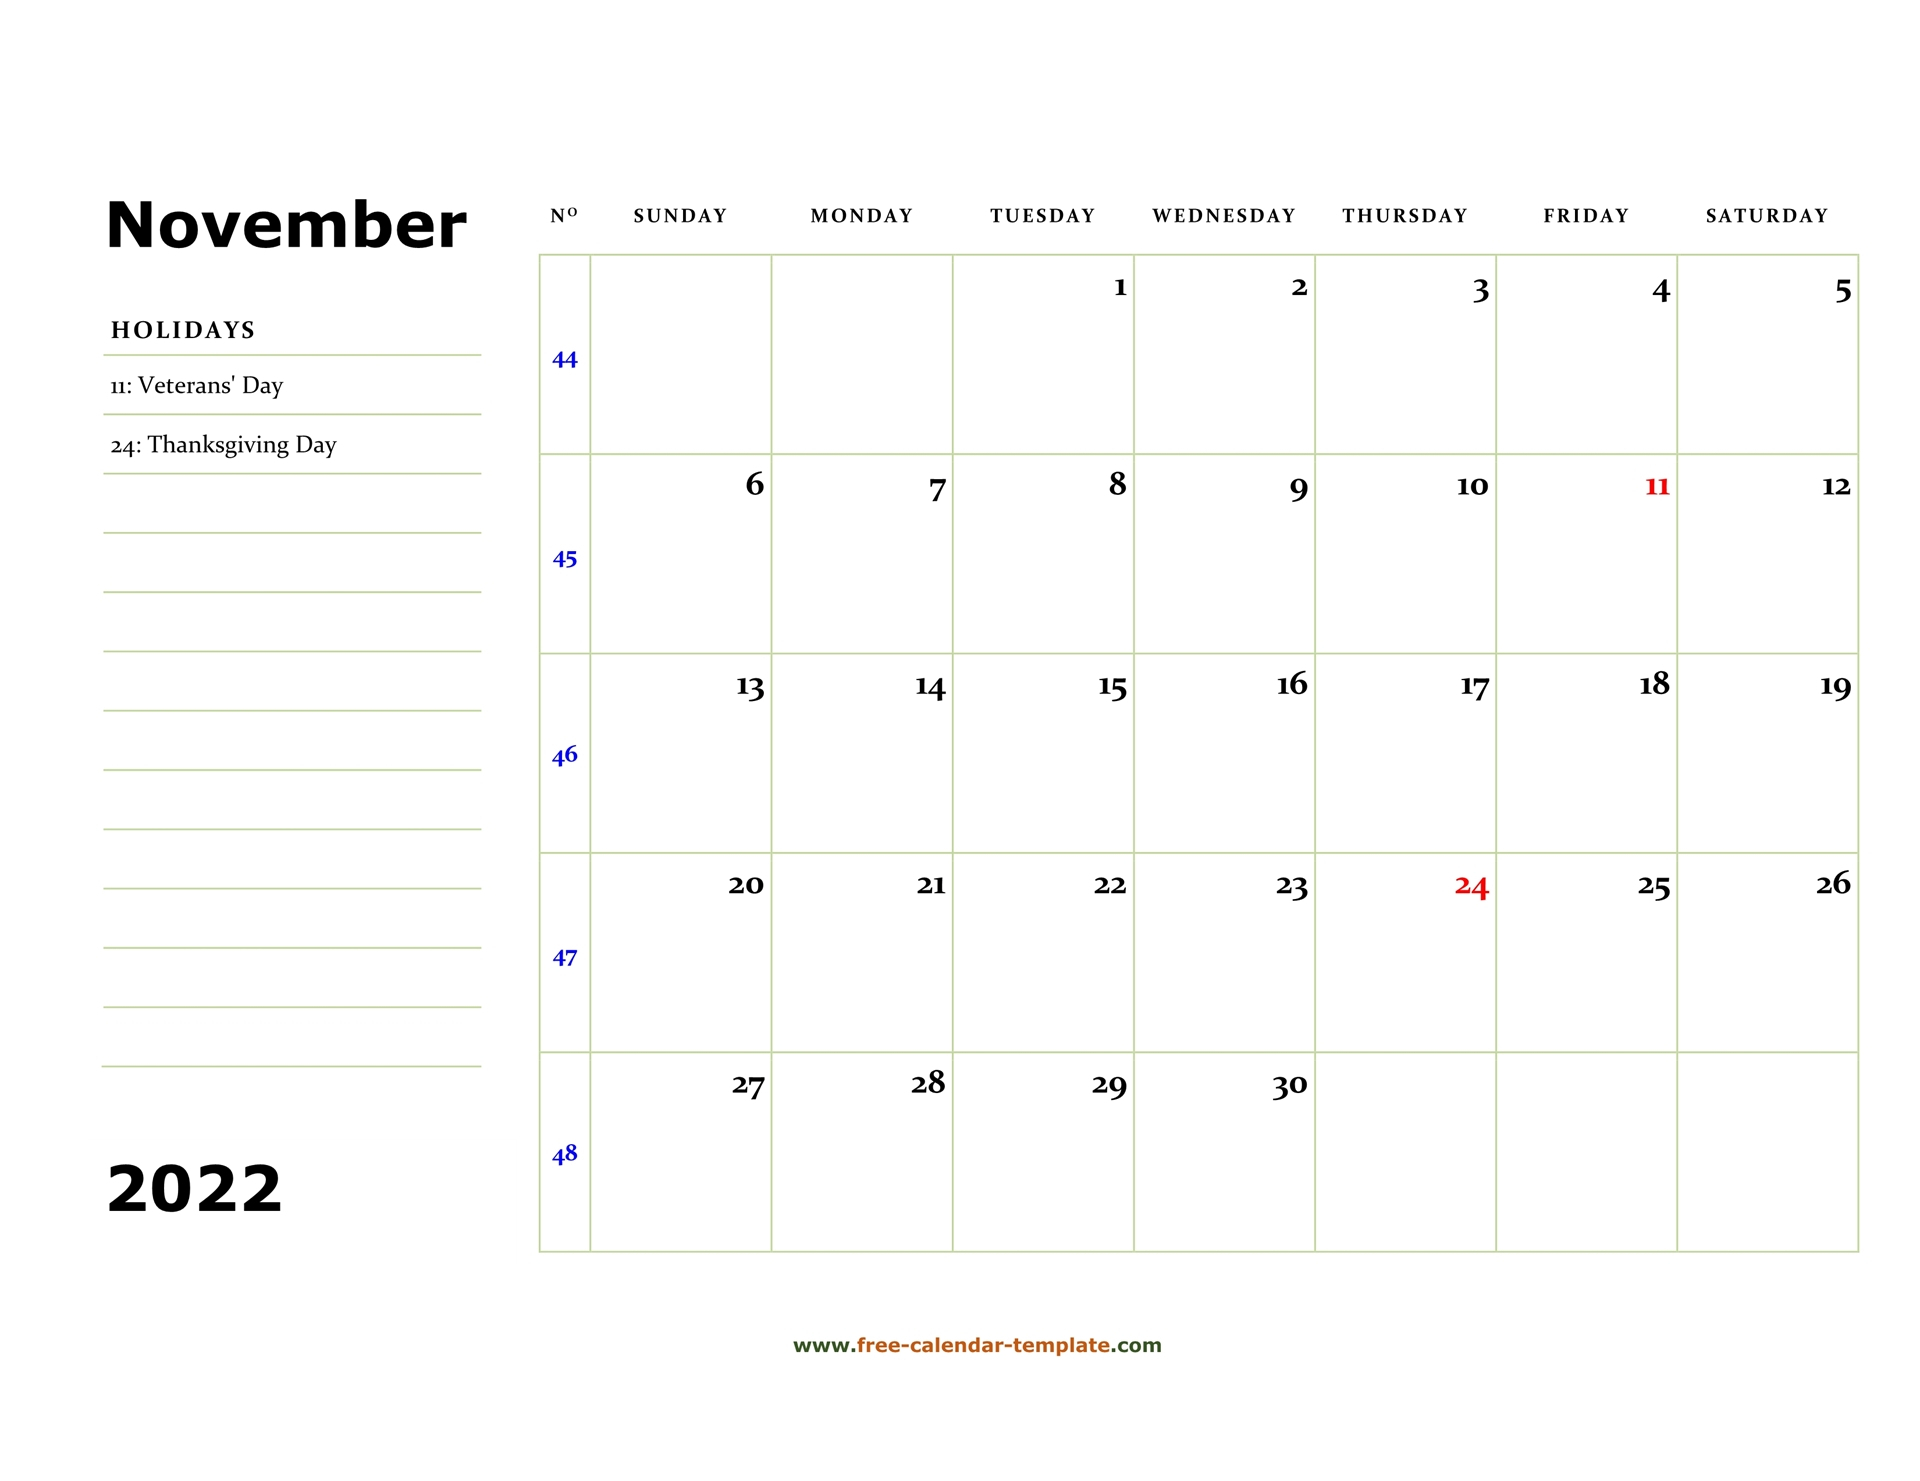 Collect November 2022 Islamic Calendar